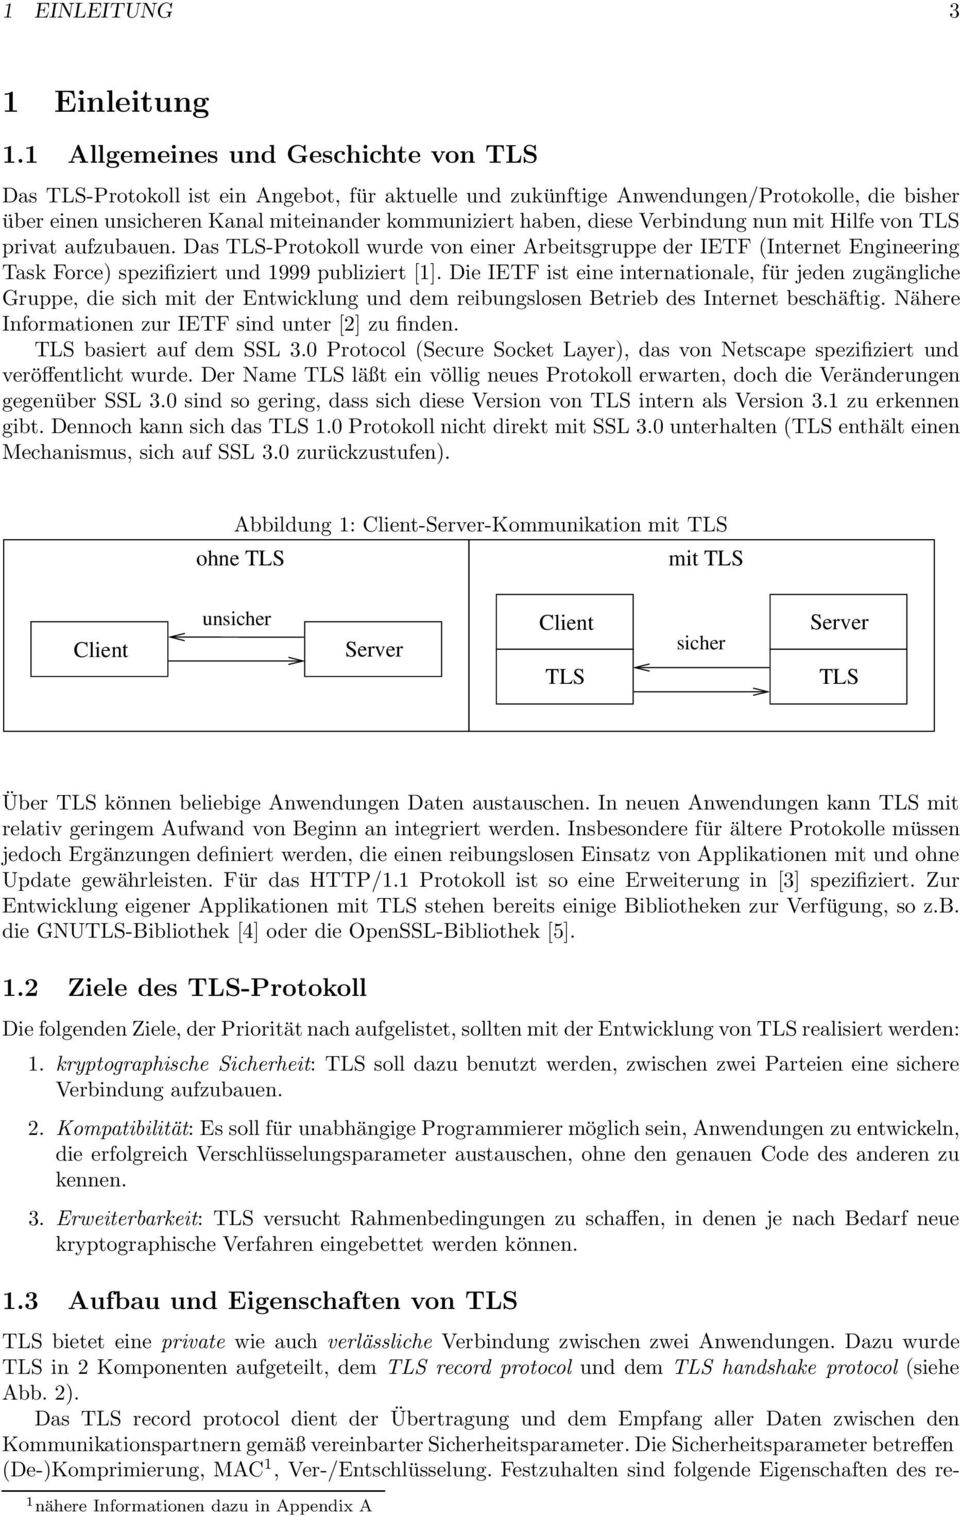 diese Verbindung nun mit Hilfe von TLS privat aufzubauen. Das TLS-Protokoll wurde von einer Arbeitsgruppe der IETF (Internet Engineering Task Force) spezifiziert und 1999 publiziert [1].